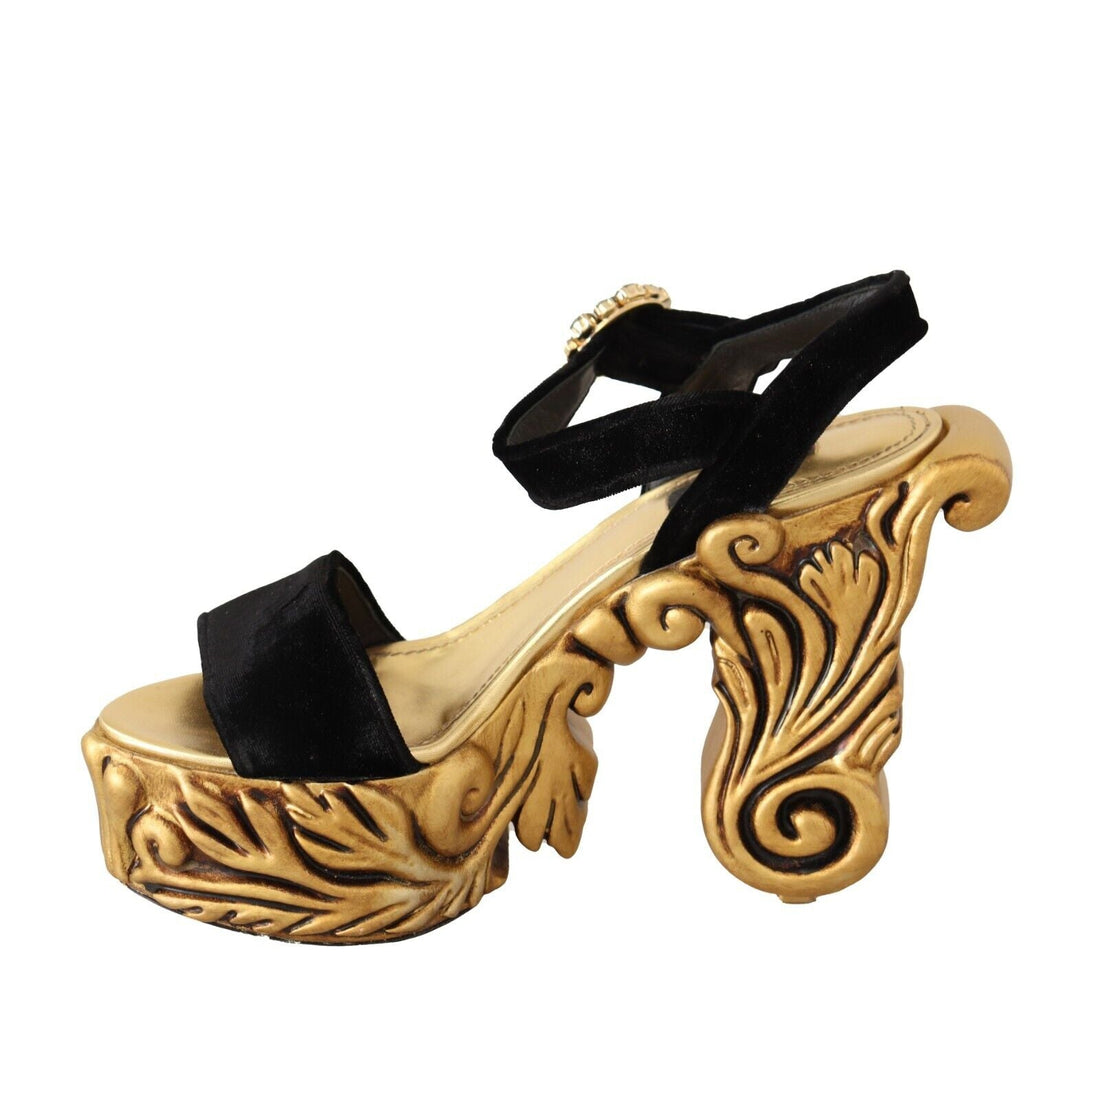 Dolce & Gabbana Black Gold Baroque Velvet Heels Crystal Shoes